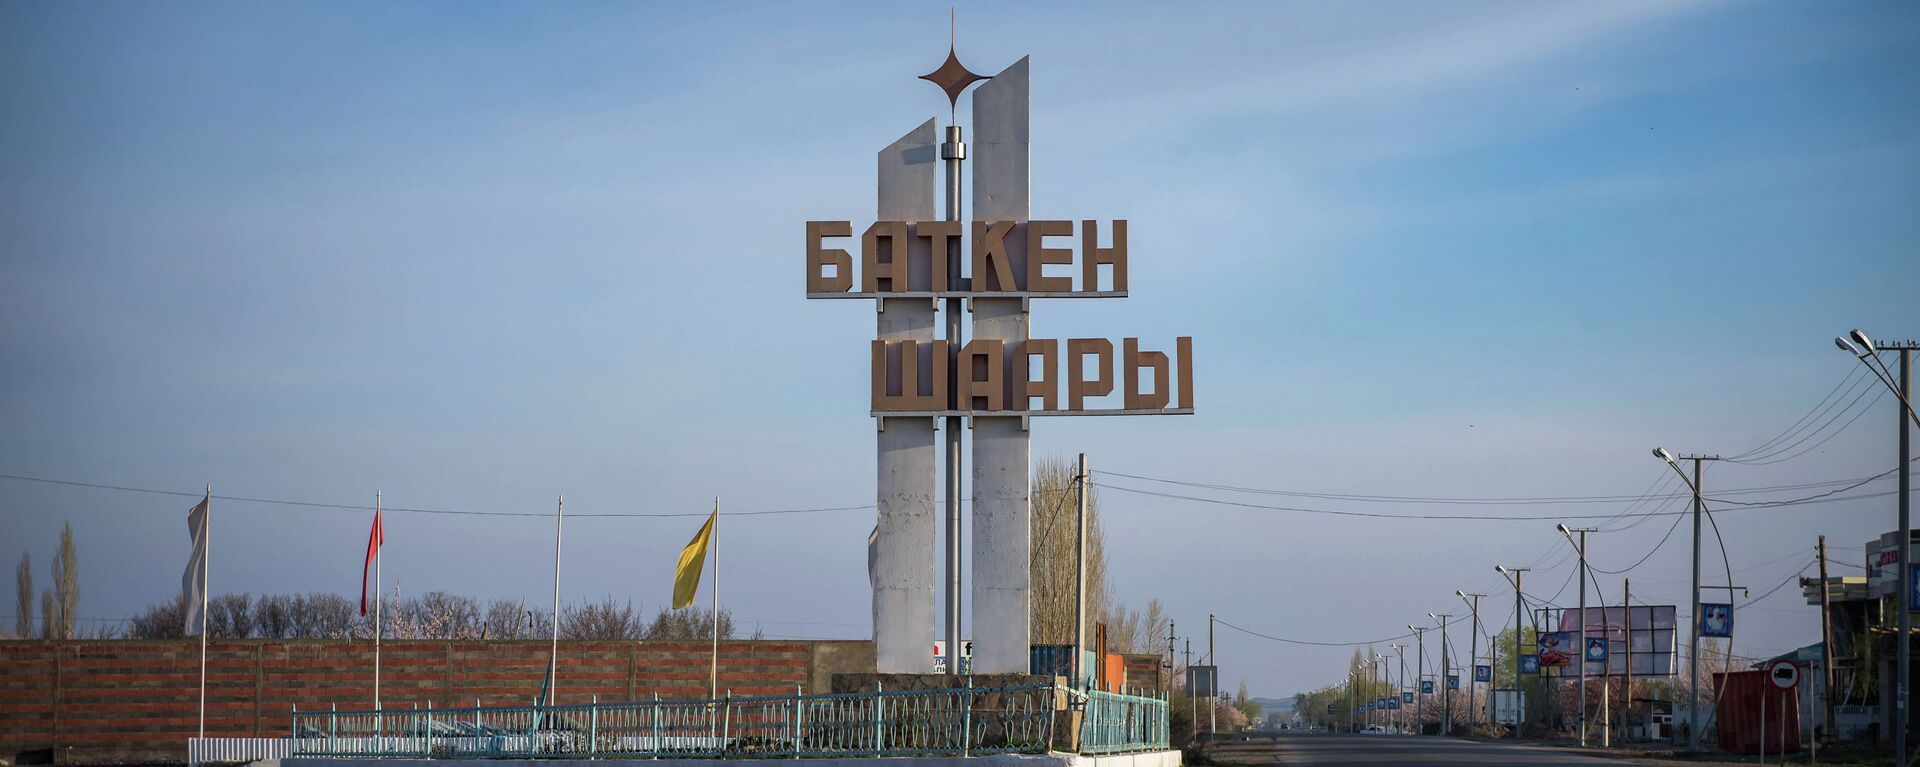 Баткен шаары. Архив - Sputnik Кыргызстан, 1920, 18.02.2021